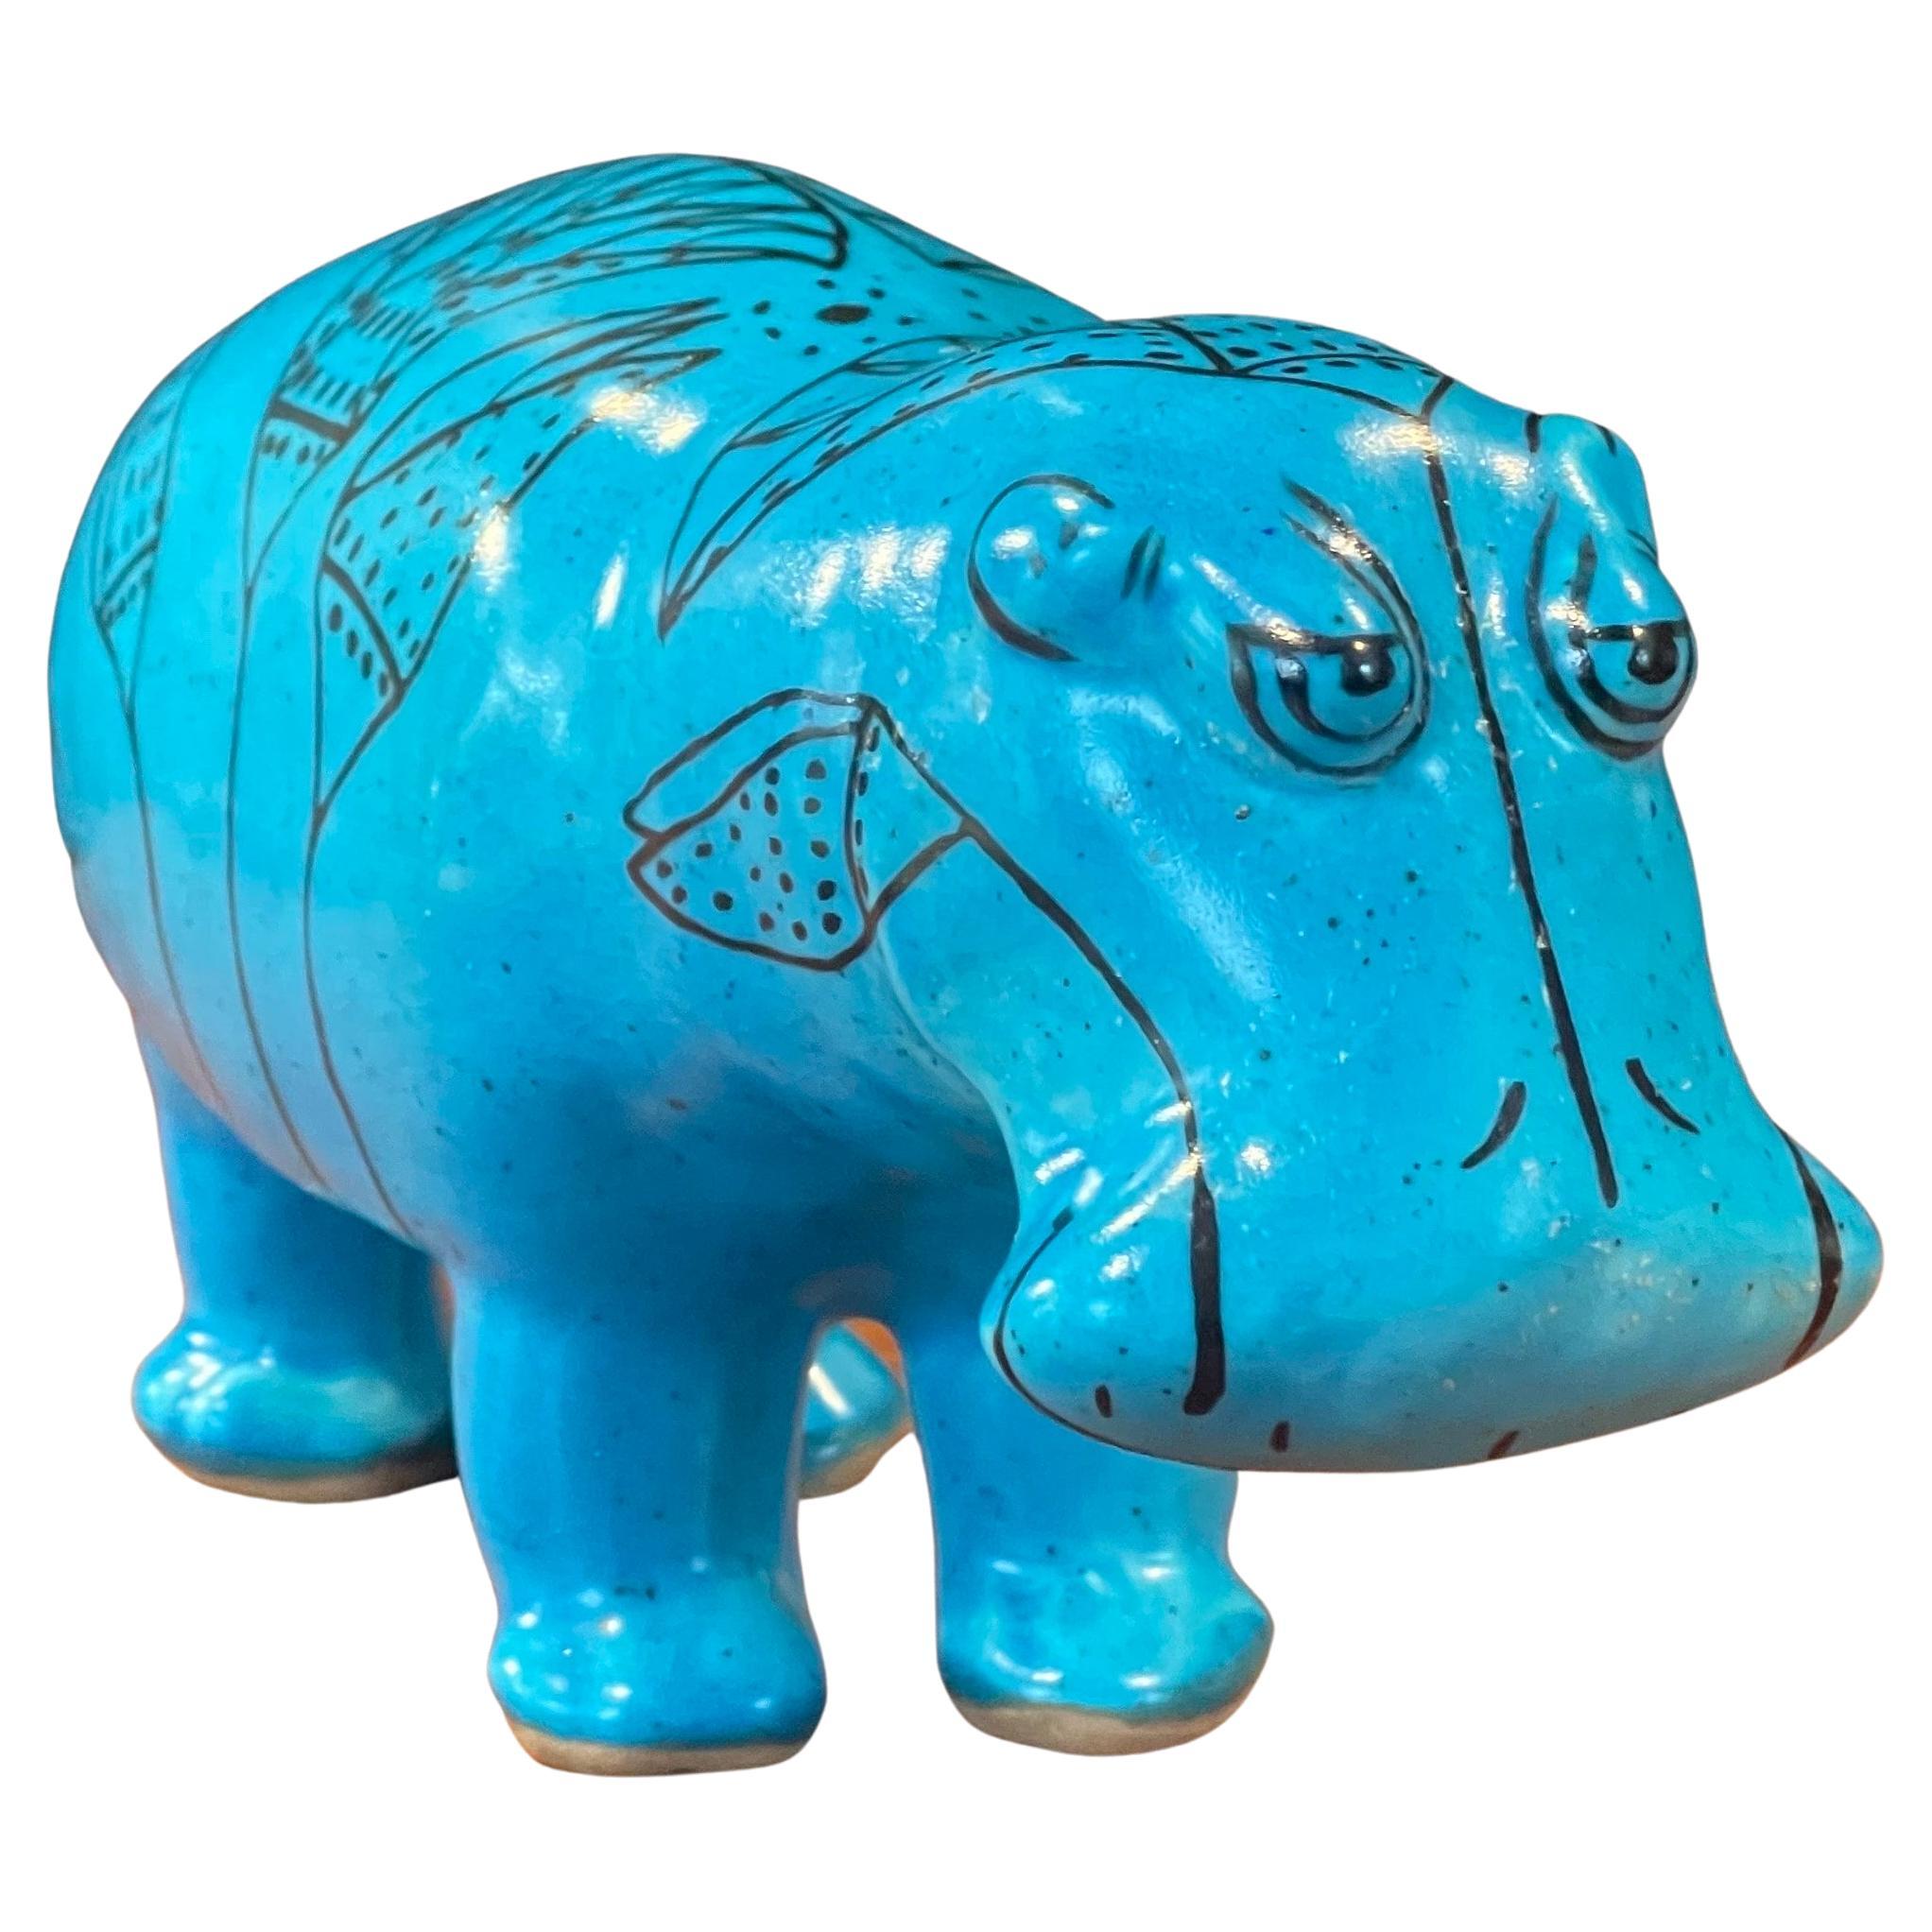 Sculpture en céramique bleue « William the Hippo » (William le Hippo) du Metropolitan Museum en vente